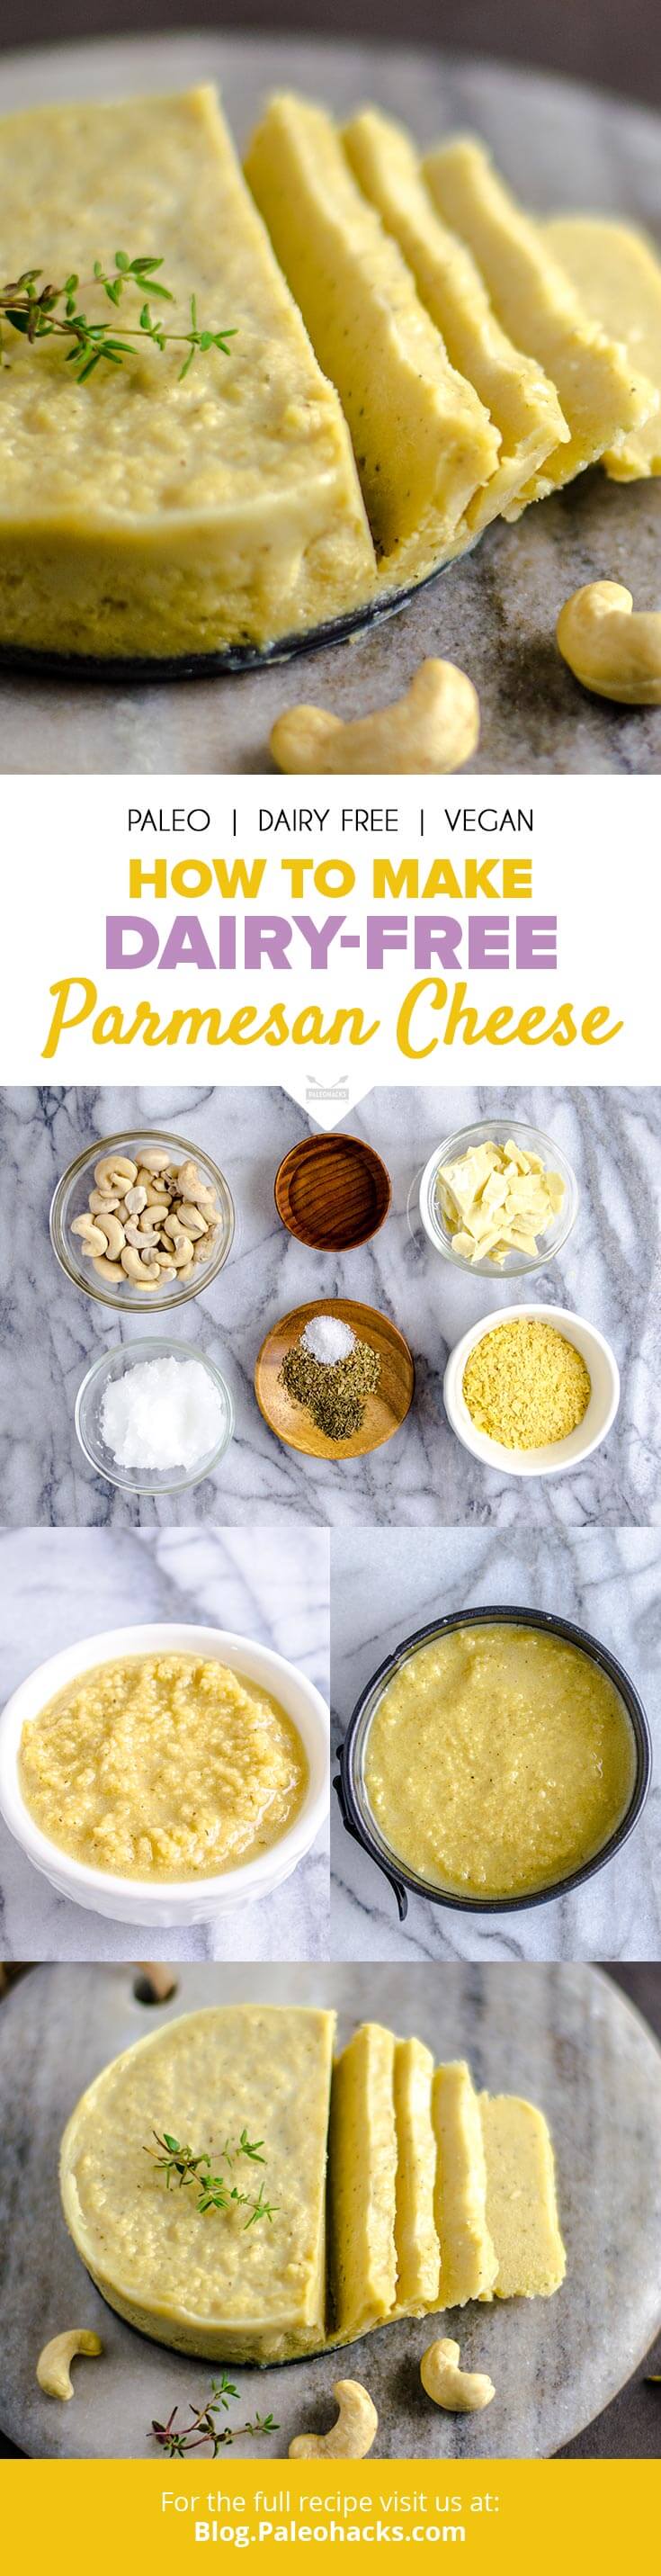 Parmesan cheese pin